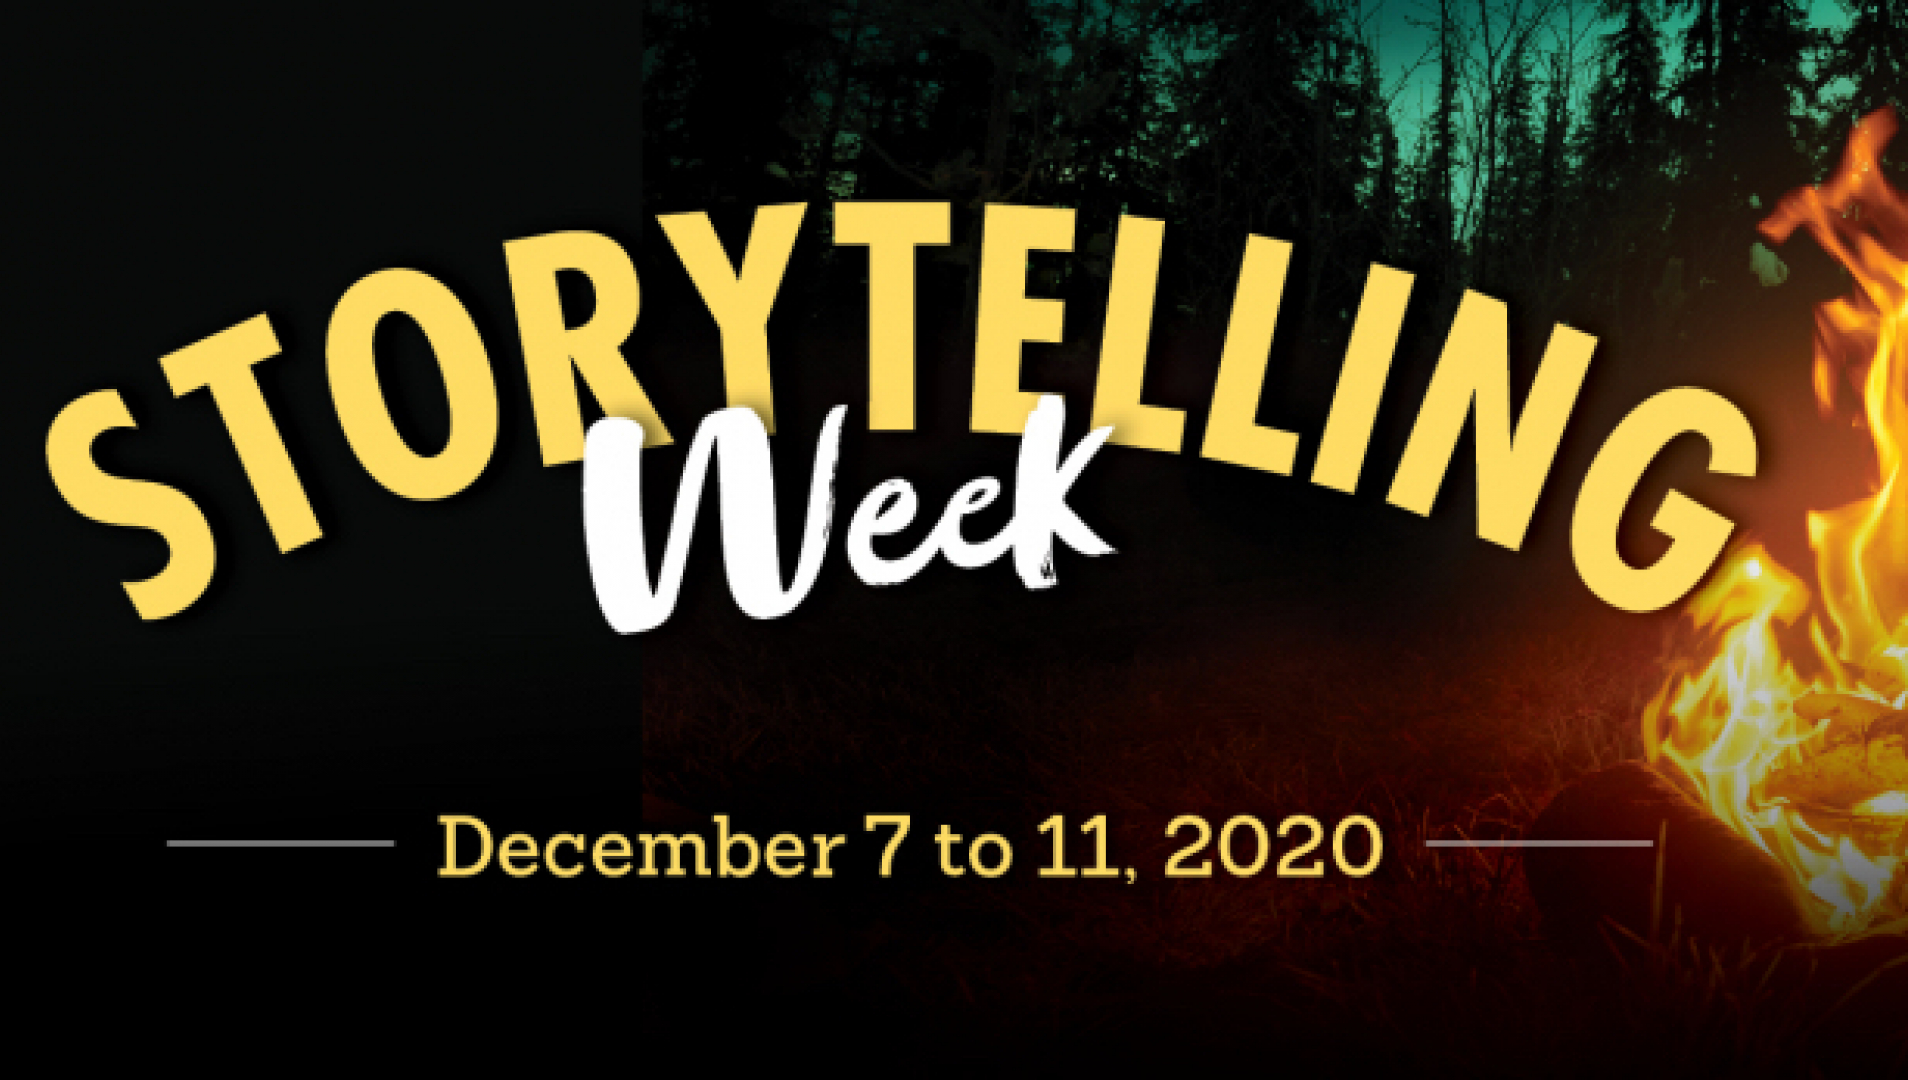 StorytellingWeek-WebBanner-2020 FINAL_0 copy